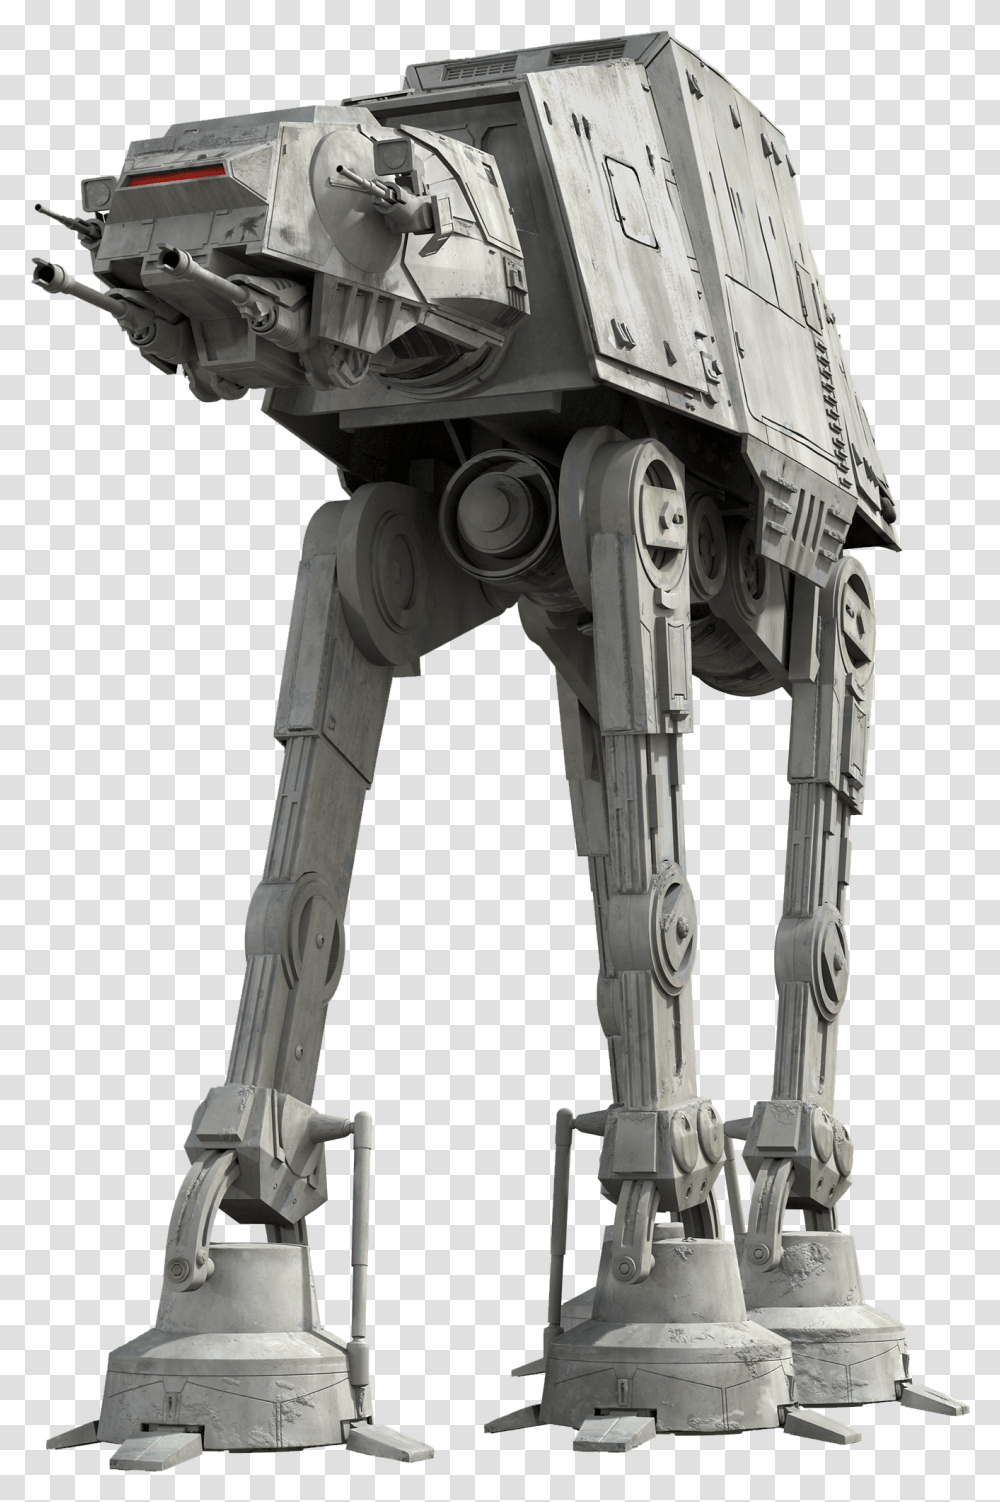 Star Wars Imperial Walker, Robot, Toy Transparent Png